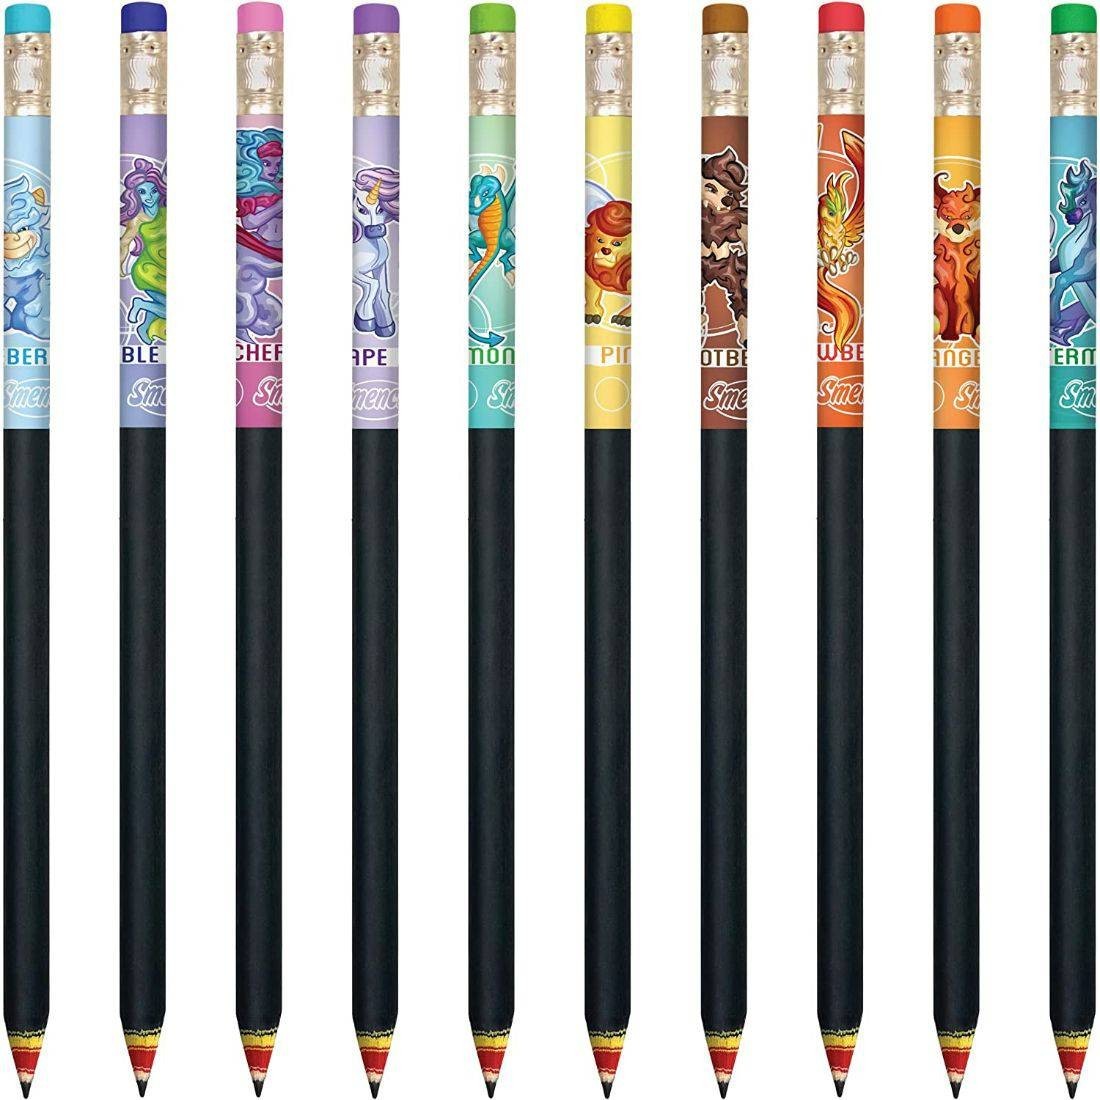 Scentco Graphite Smencils - HB #2 Scented Pencils, 10 Count